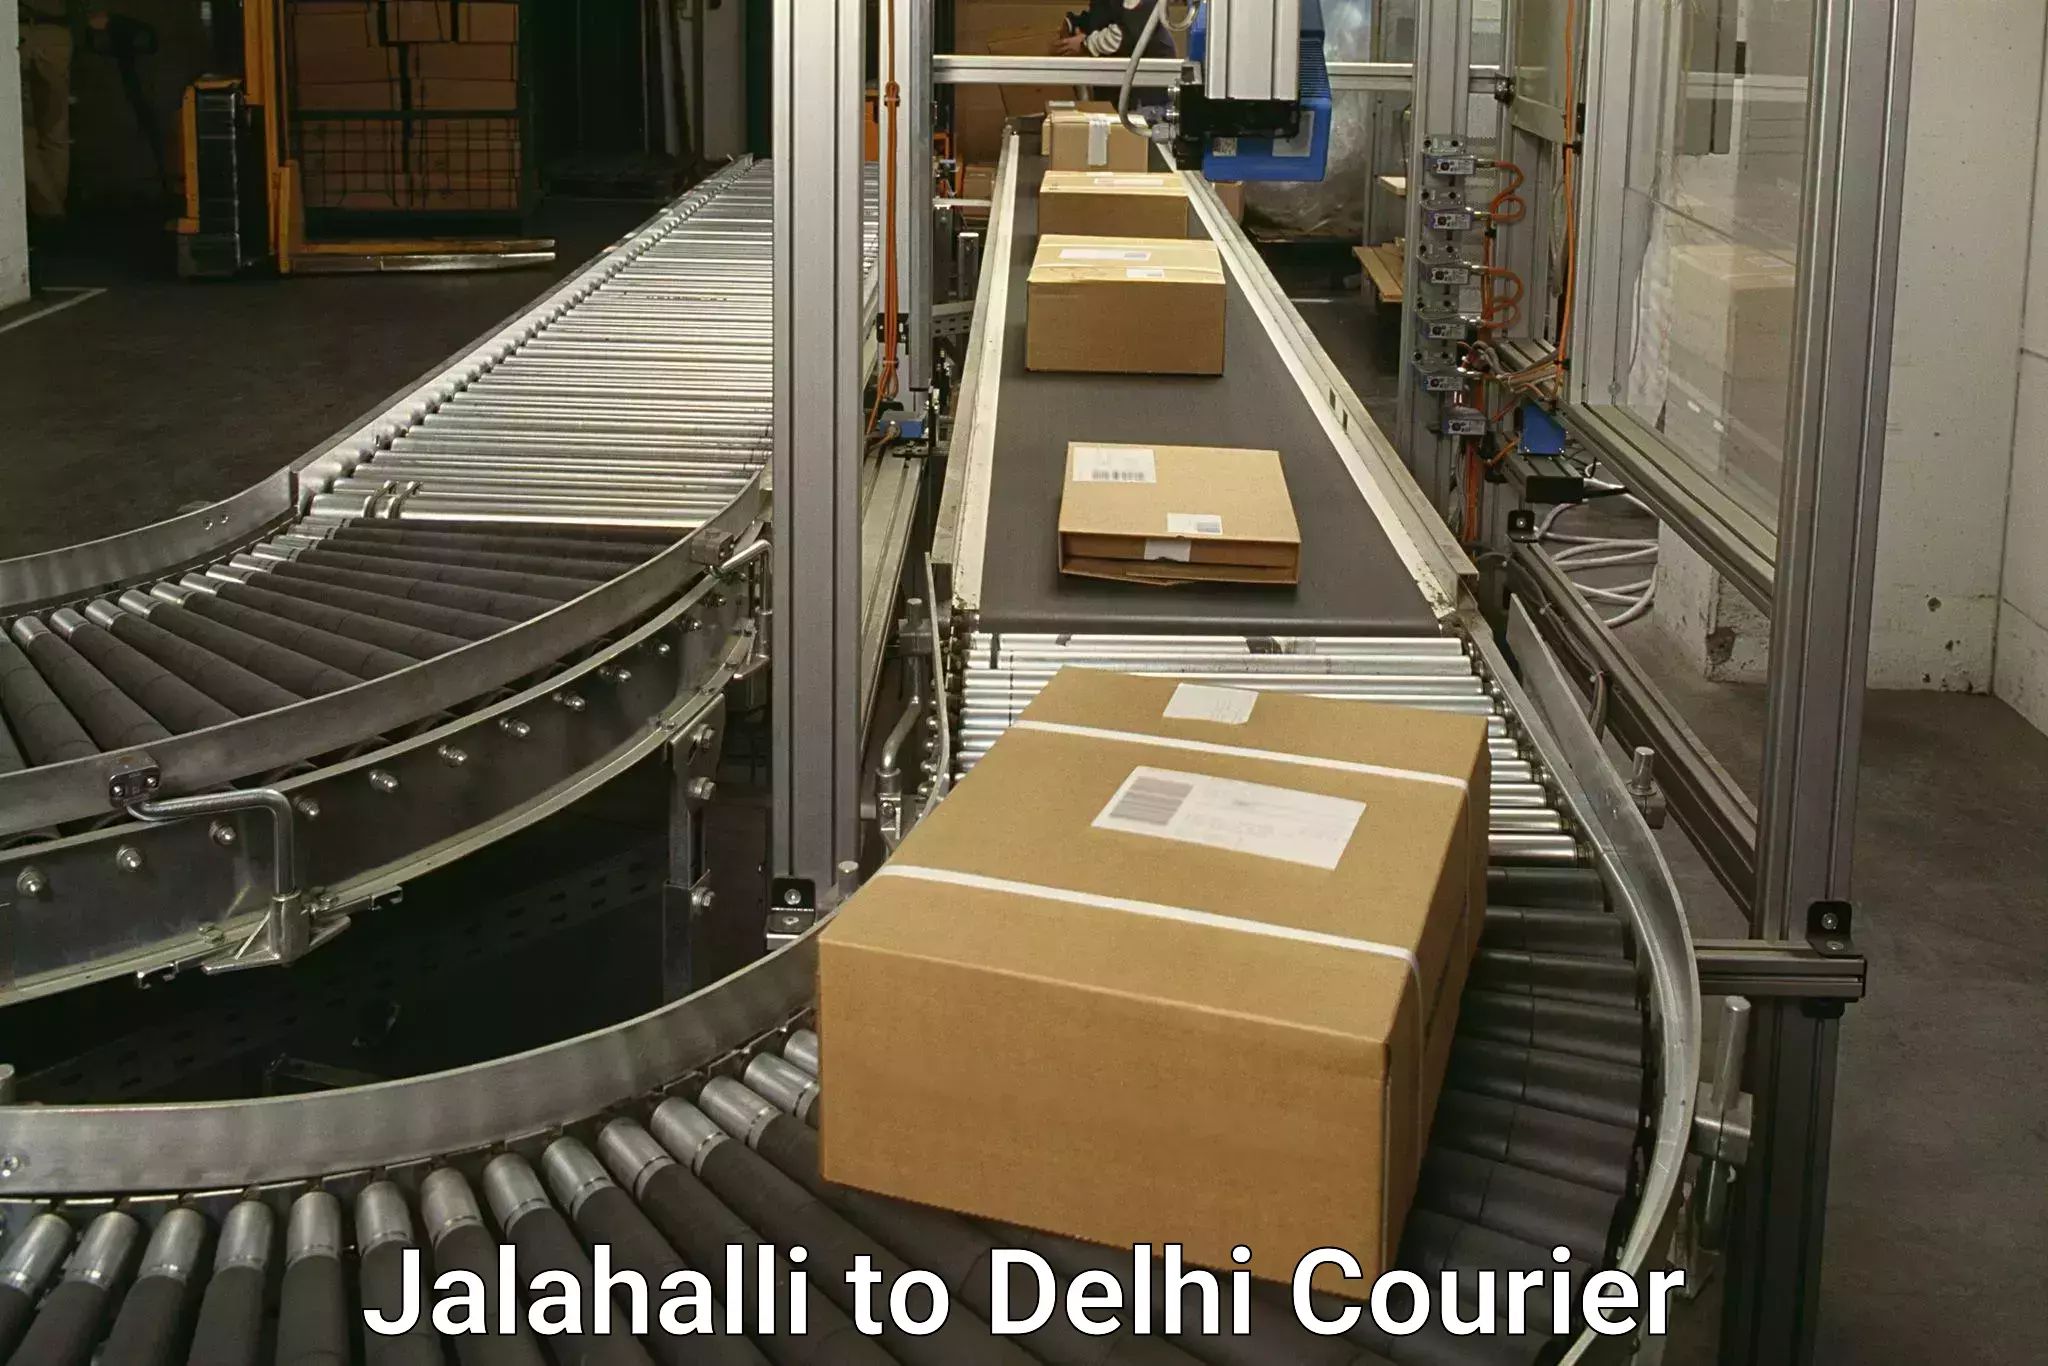 Door-to-door freight service Jalahalli to Delhi